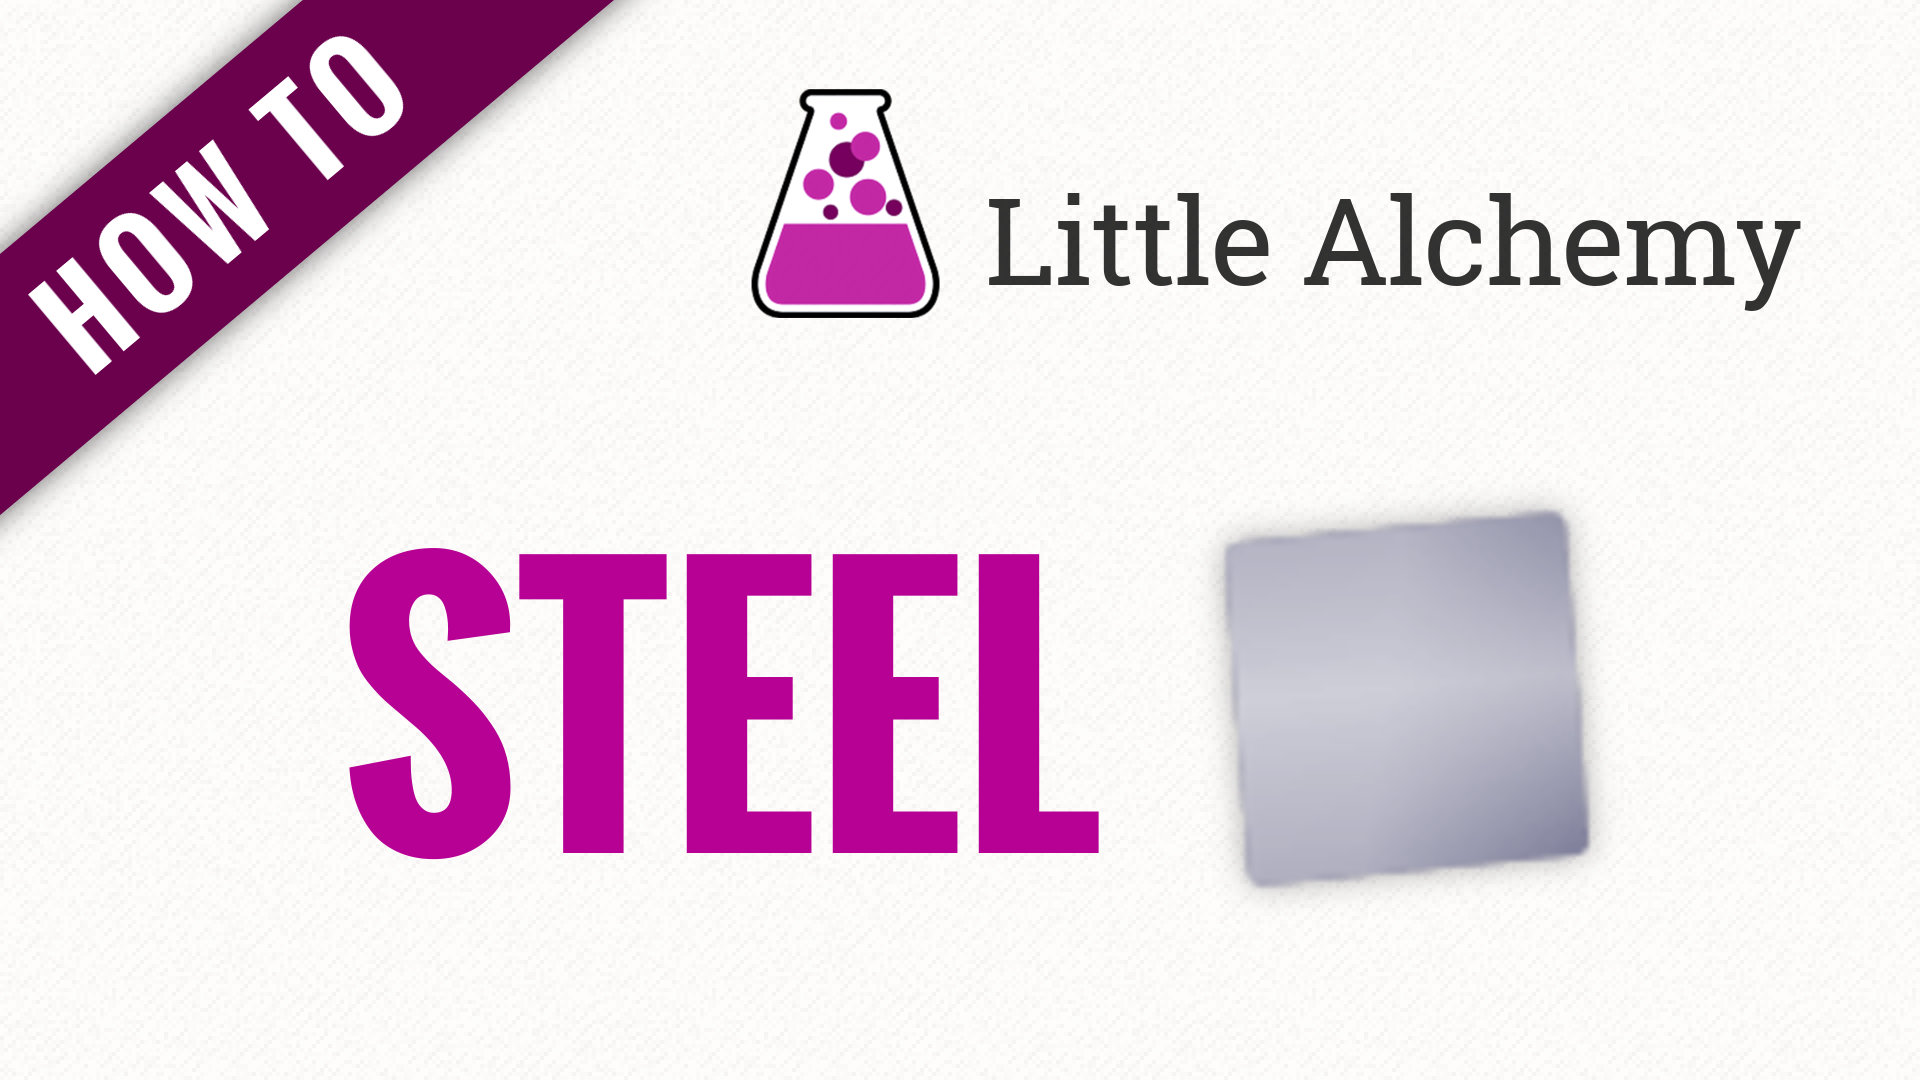 steel - Little Alchemy Cheats